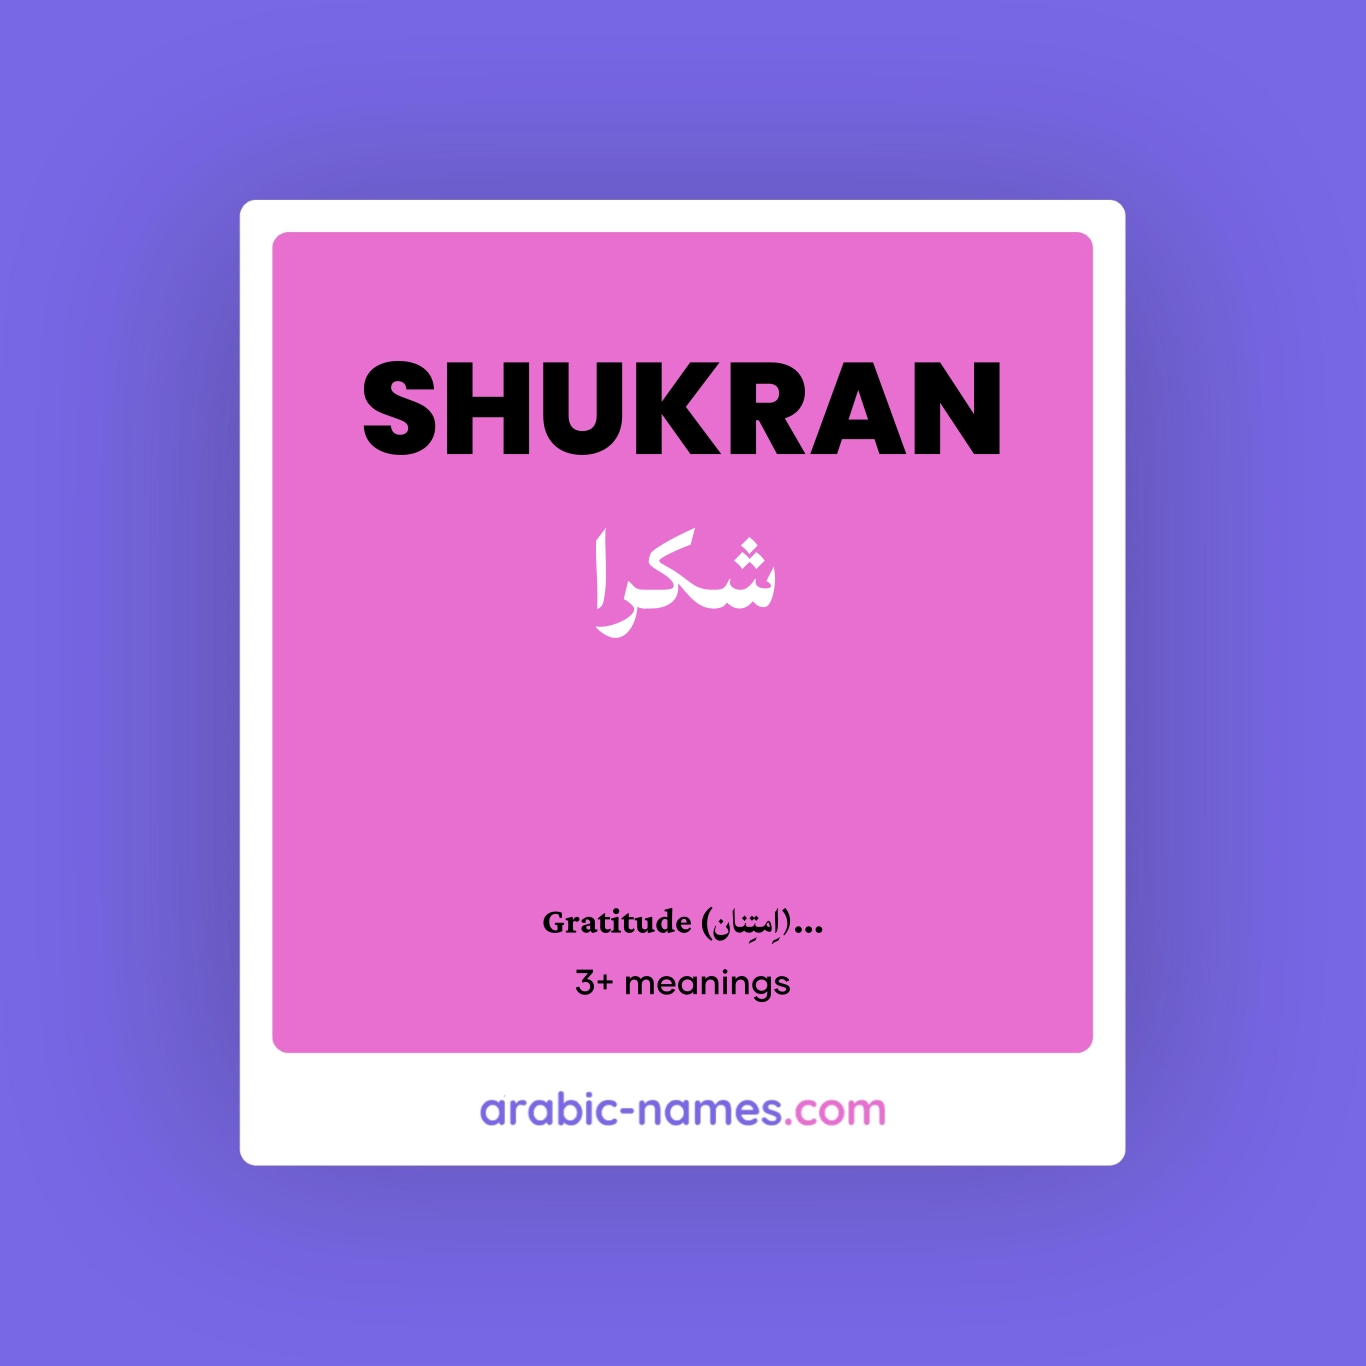 shukran meaning in urdu